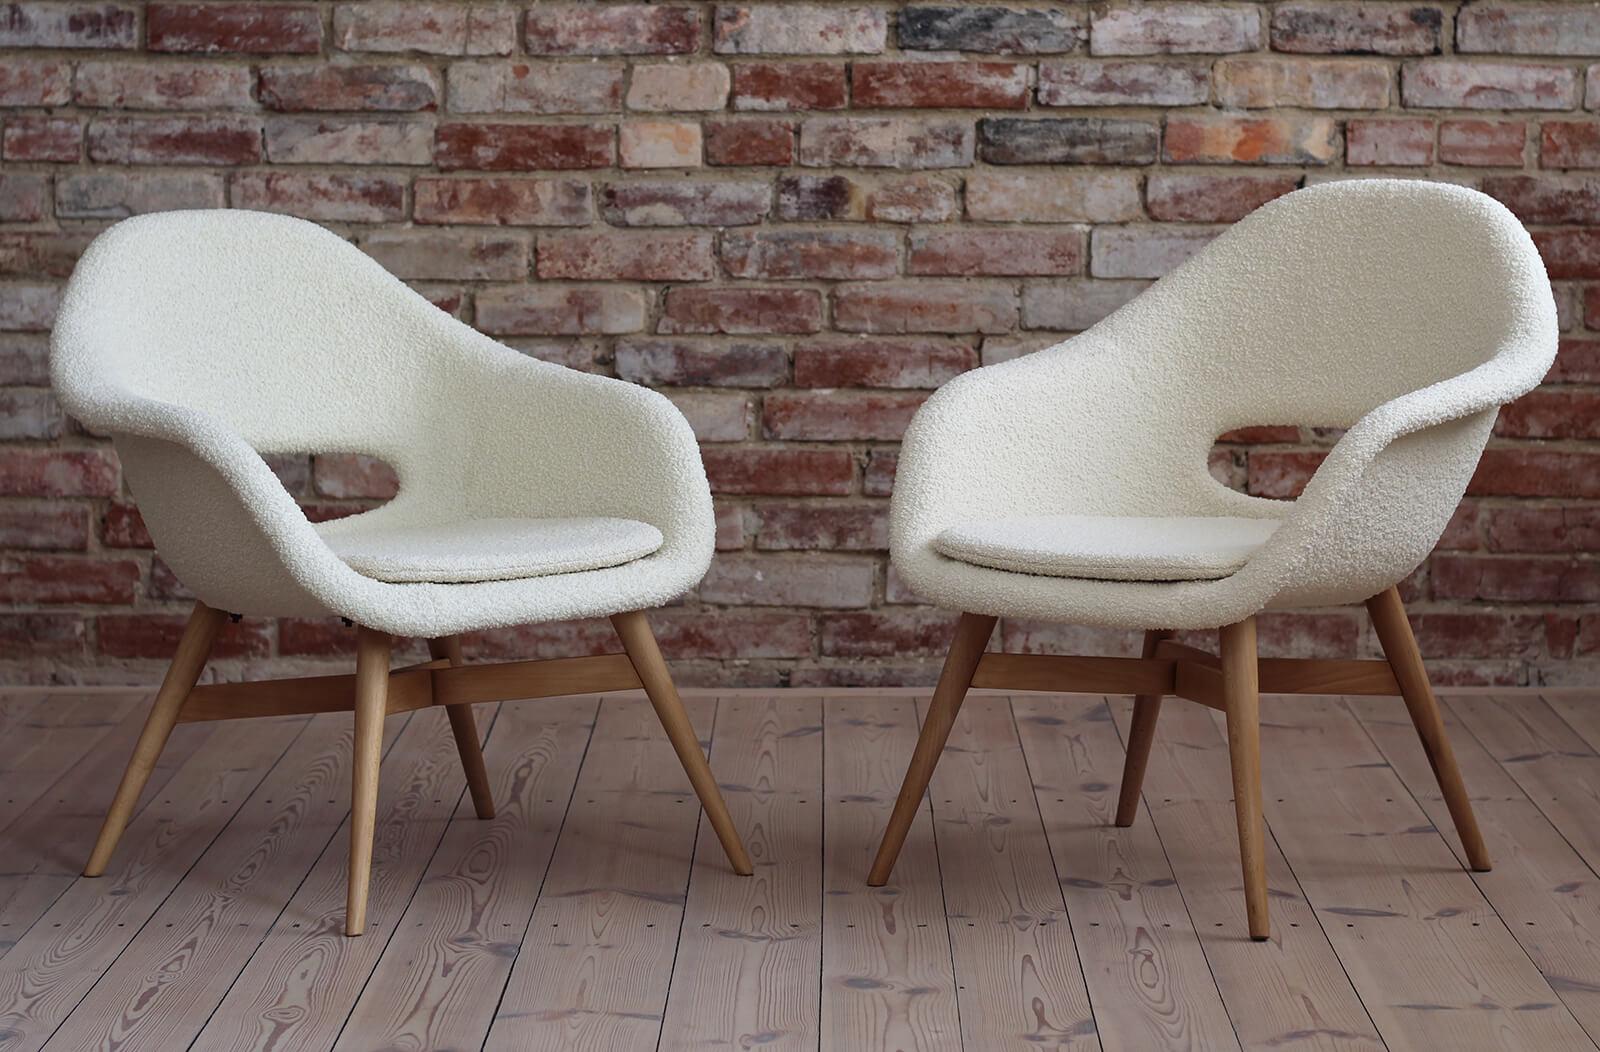 Cet ensemble de 2 chaises longues a été conçu à l'origine par le célèbre Miroslav Navrátil dans les années 1950, originaire de la République tchèque. La coque du siège est en fibre de verre et repose sur une base en bois. L'ensemble de la pièce a